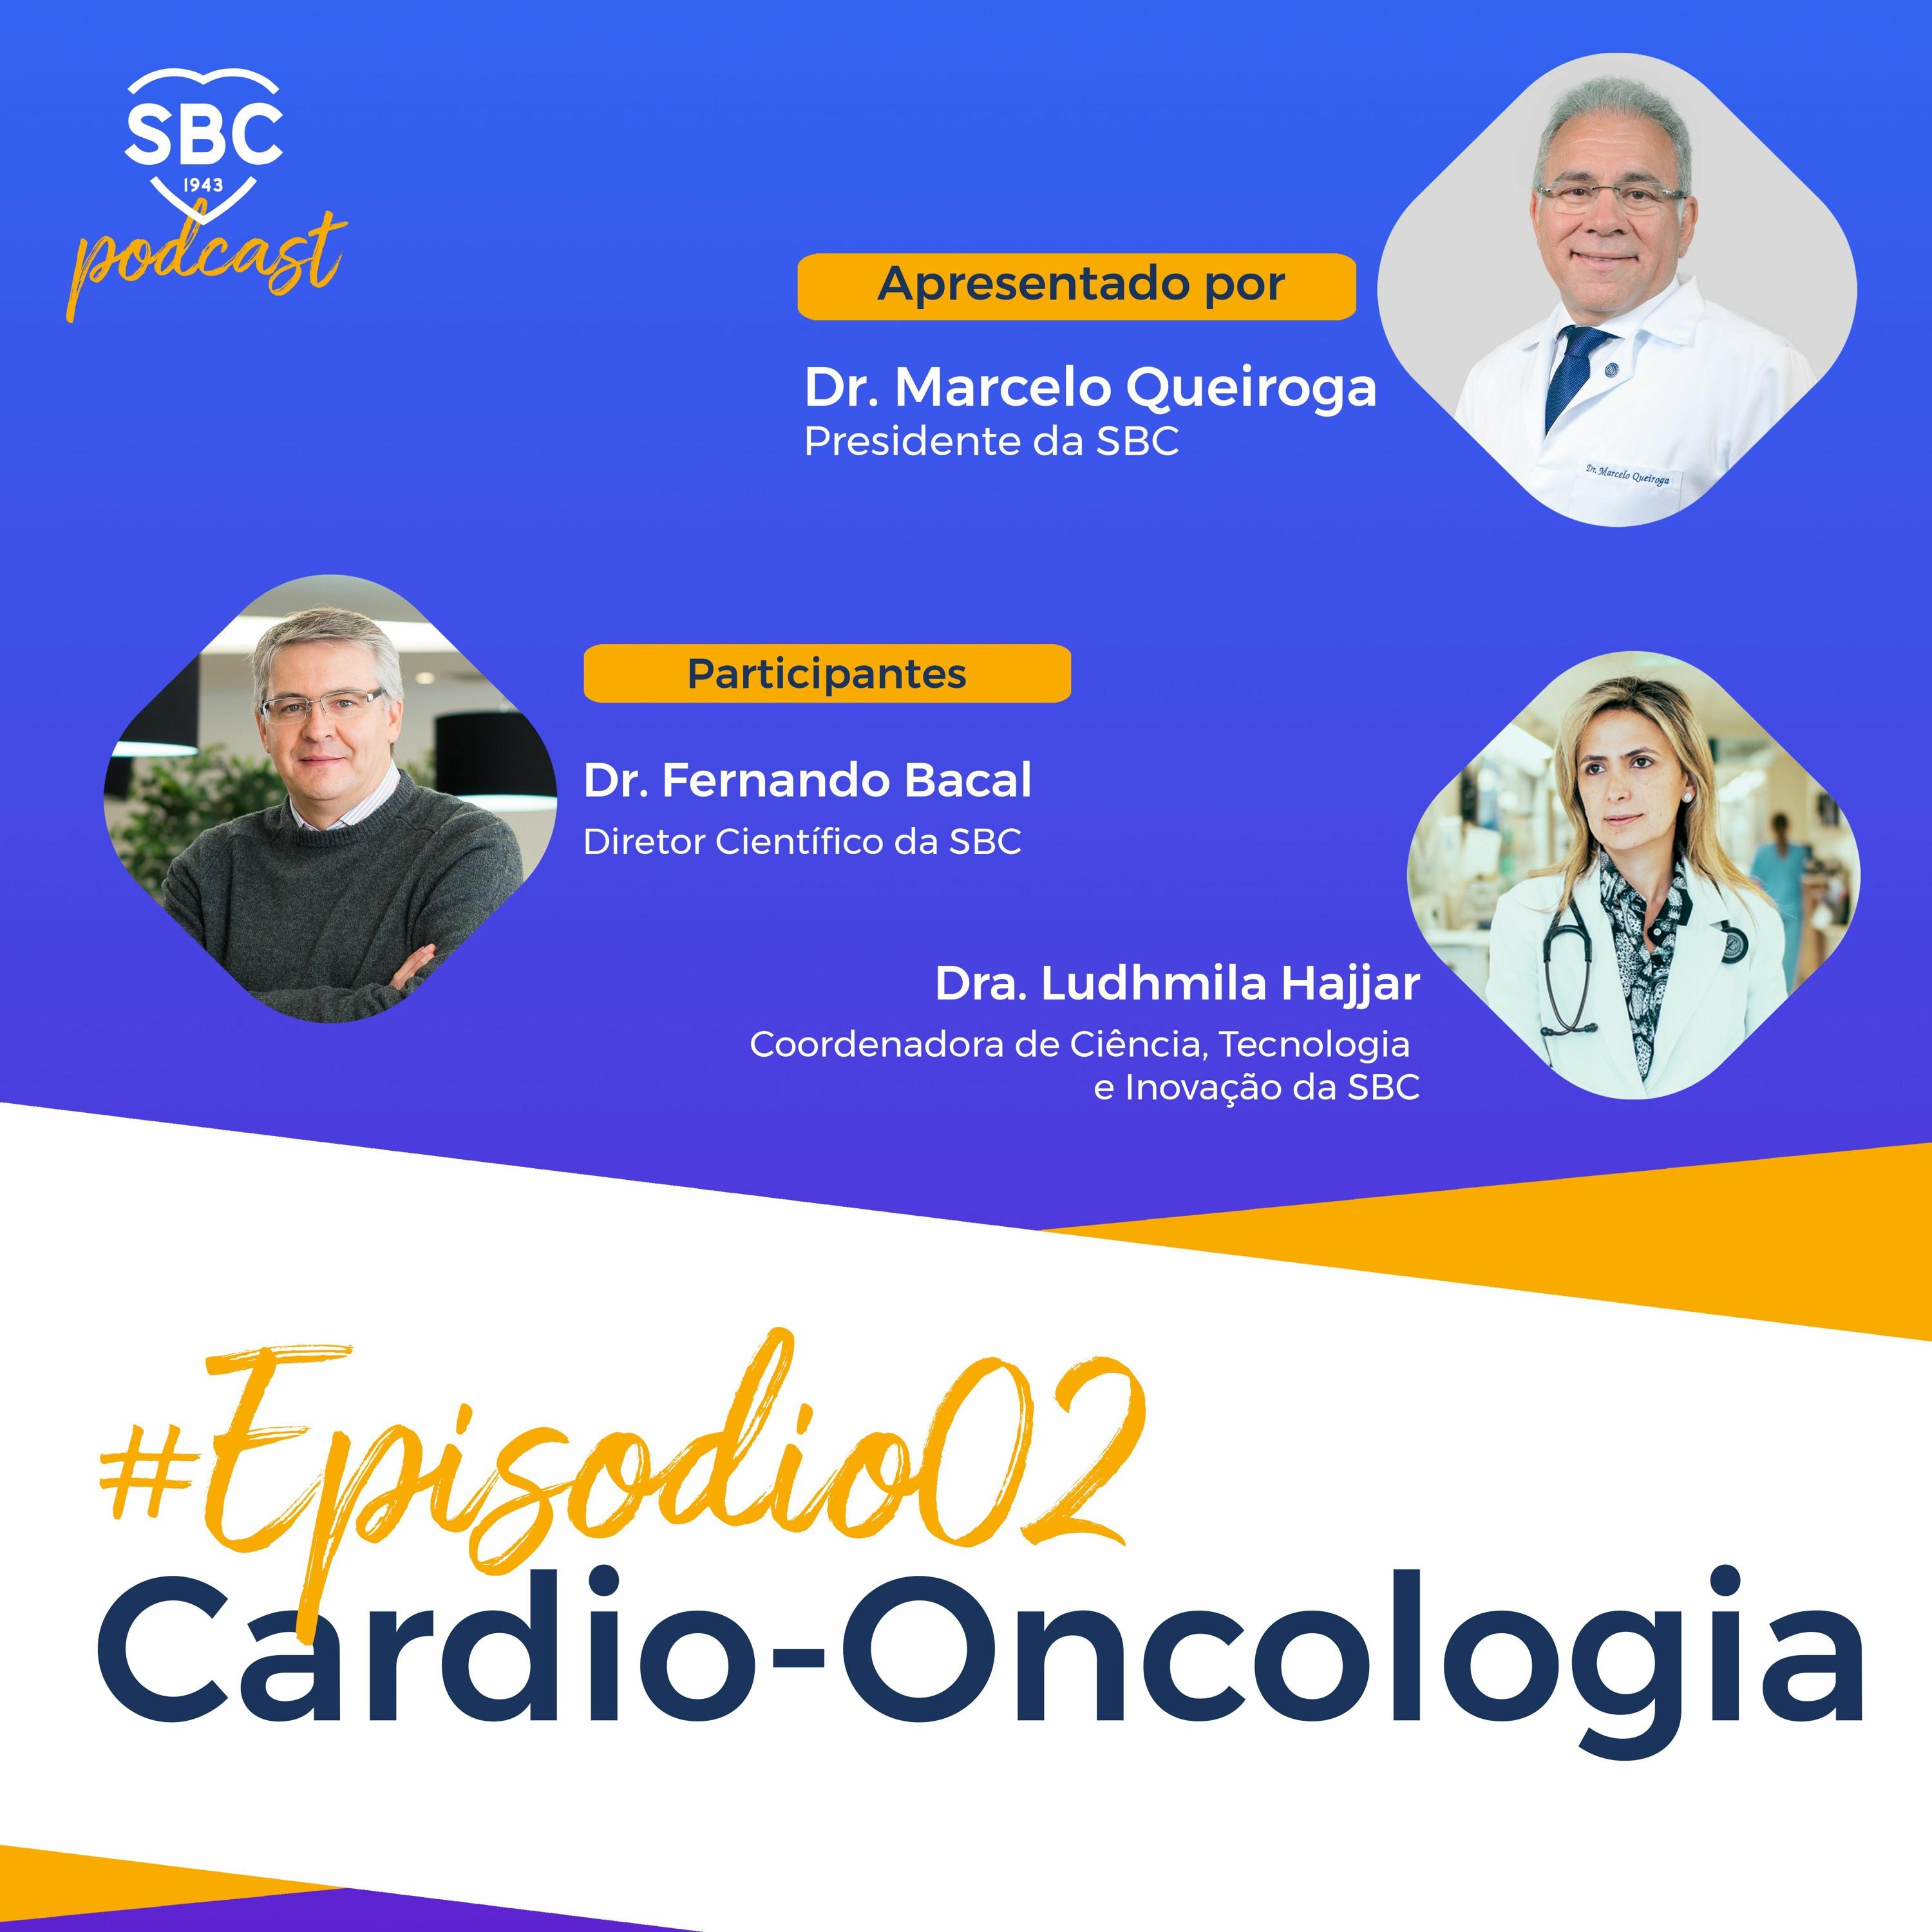 Neste episódio, os cardiologistas Marcelo Queiroga, Fernando Bacal e Ludhmila Hajjar batem um papo descontraído sobre Cardio-oncologia e suas aplicações clinicas.